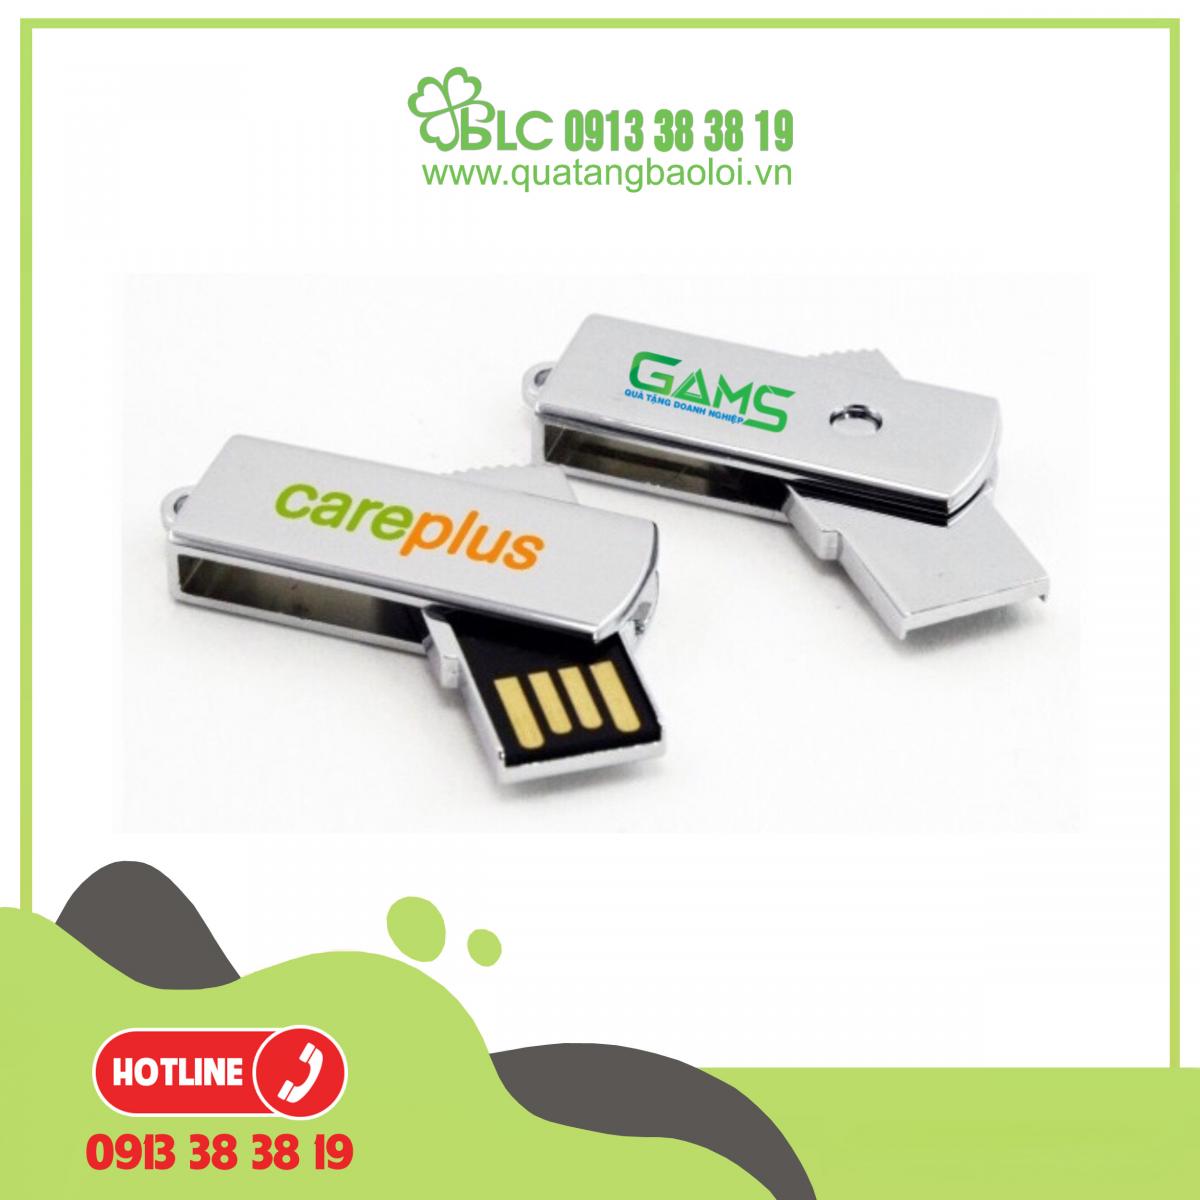 USB in logo giá rẻ Quà Tặng Hải Phòng